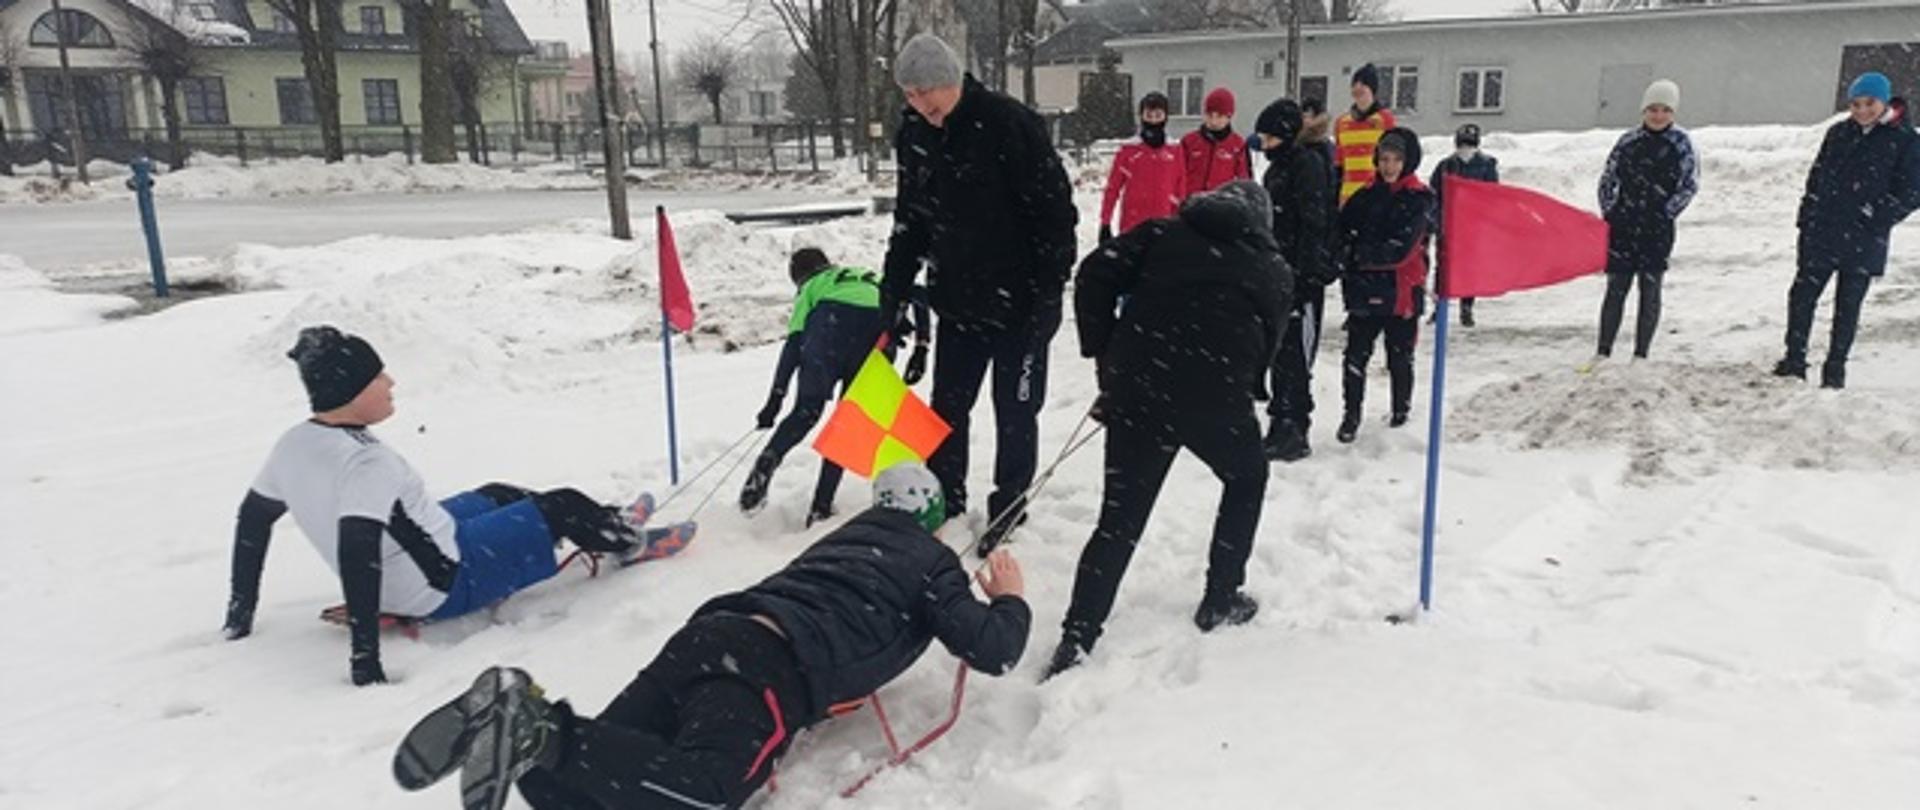 Zabawy na śniegu - dzieci na korcie pokonują tor przeszkód